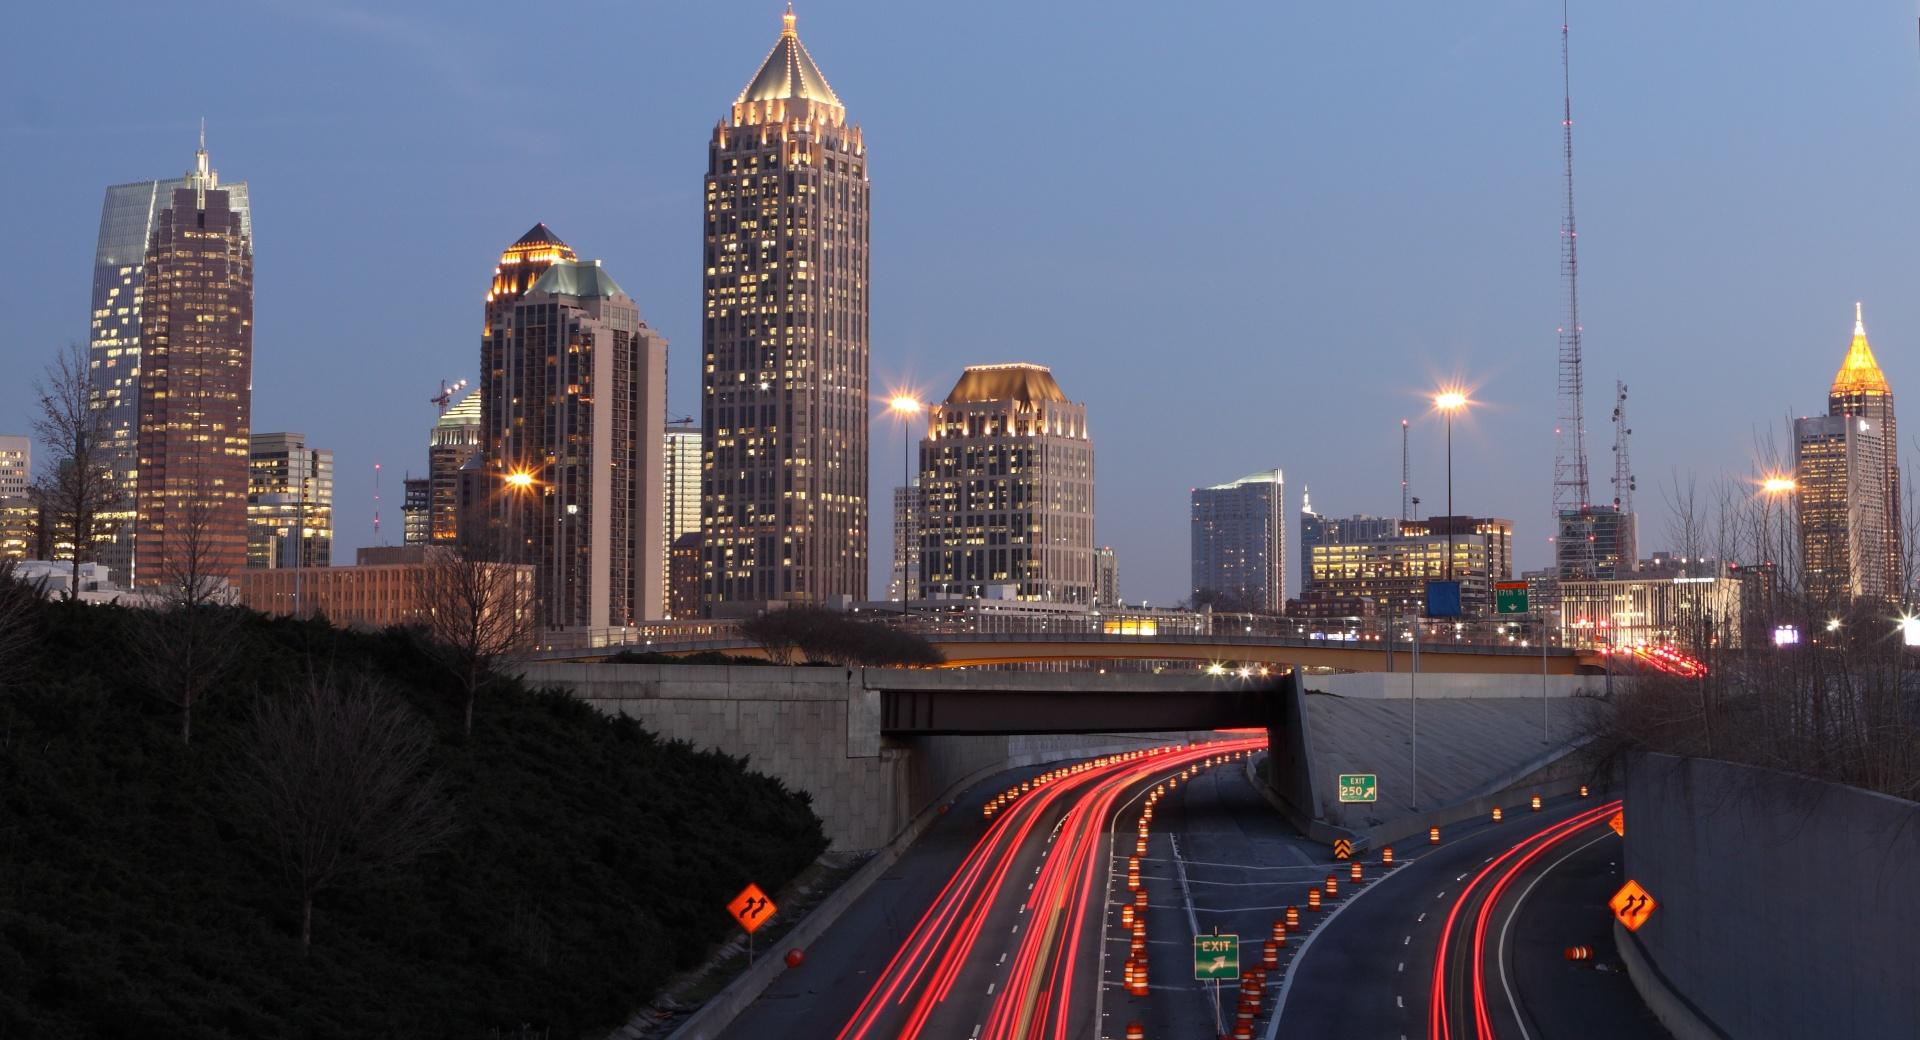 Atlanta City at 1024 x 1024 iPad size wallpapers HD quality